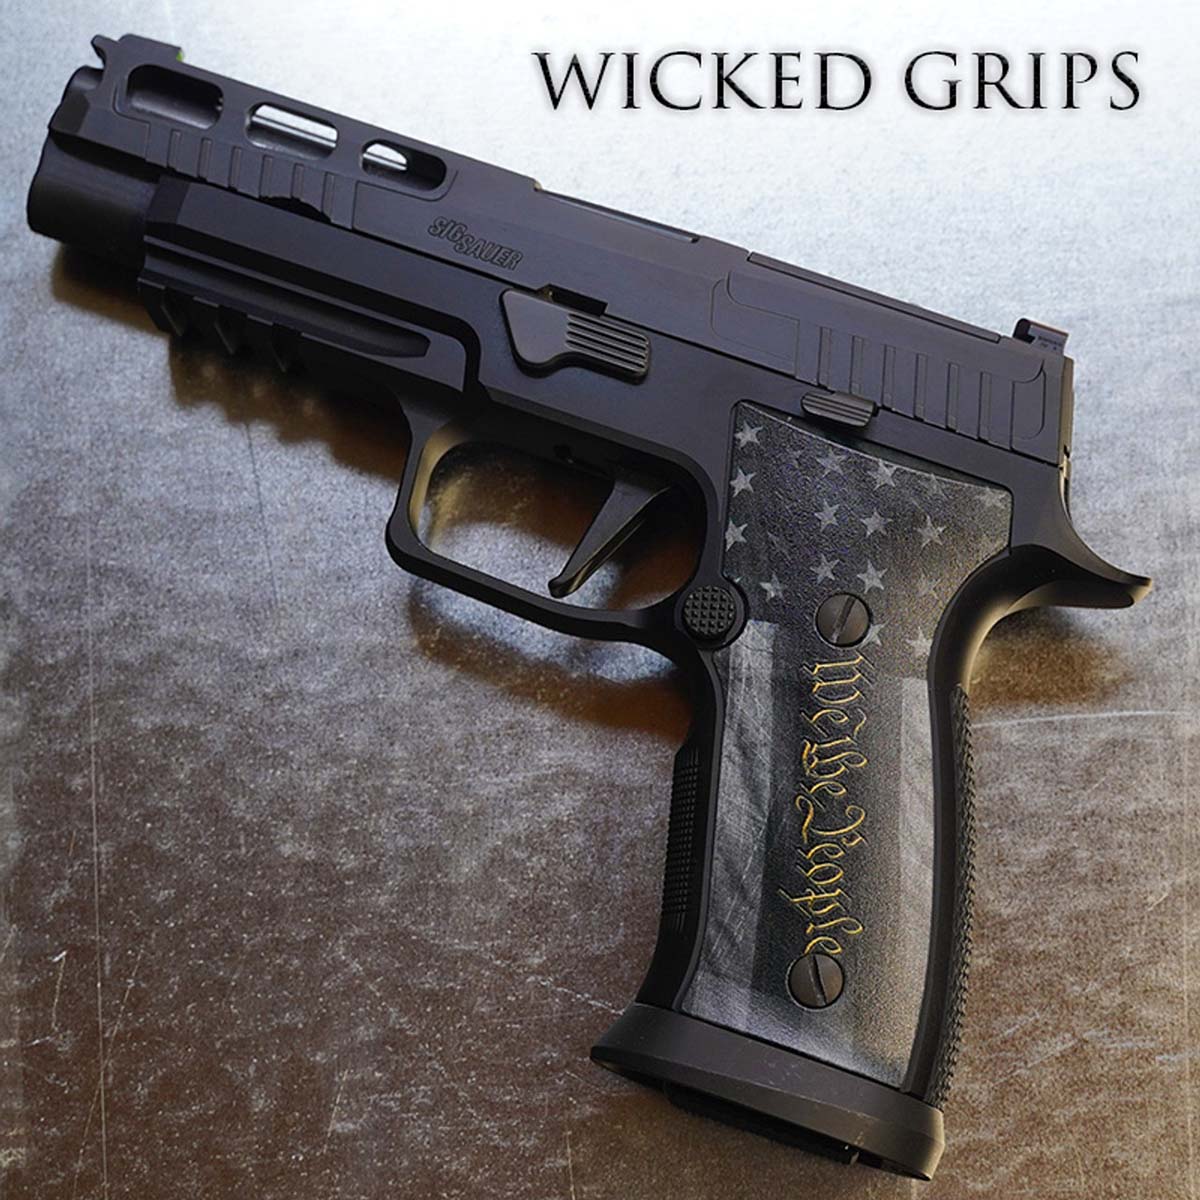 Wicked Grips custom SIG handgun grips